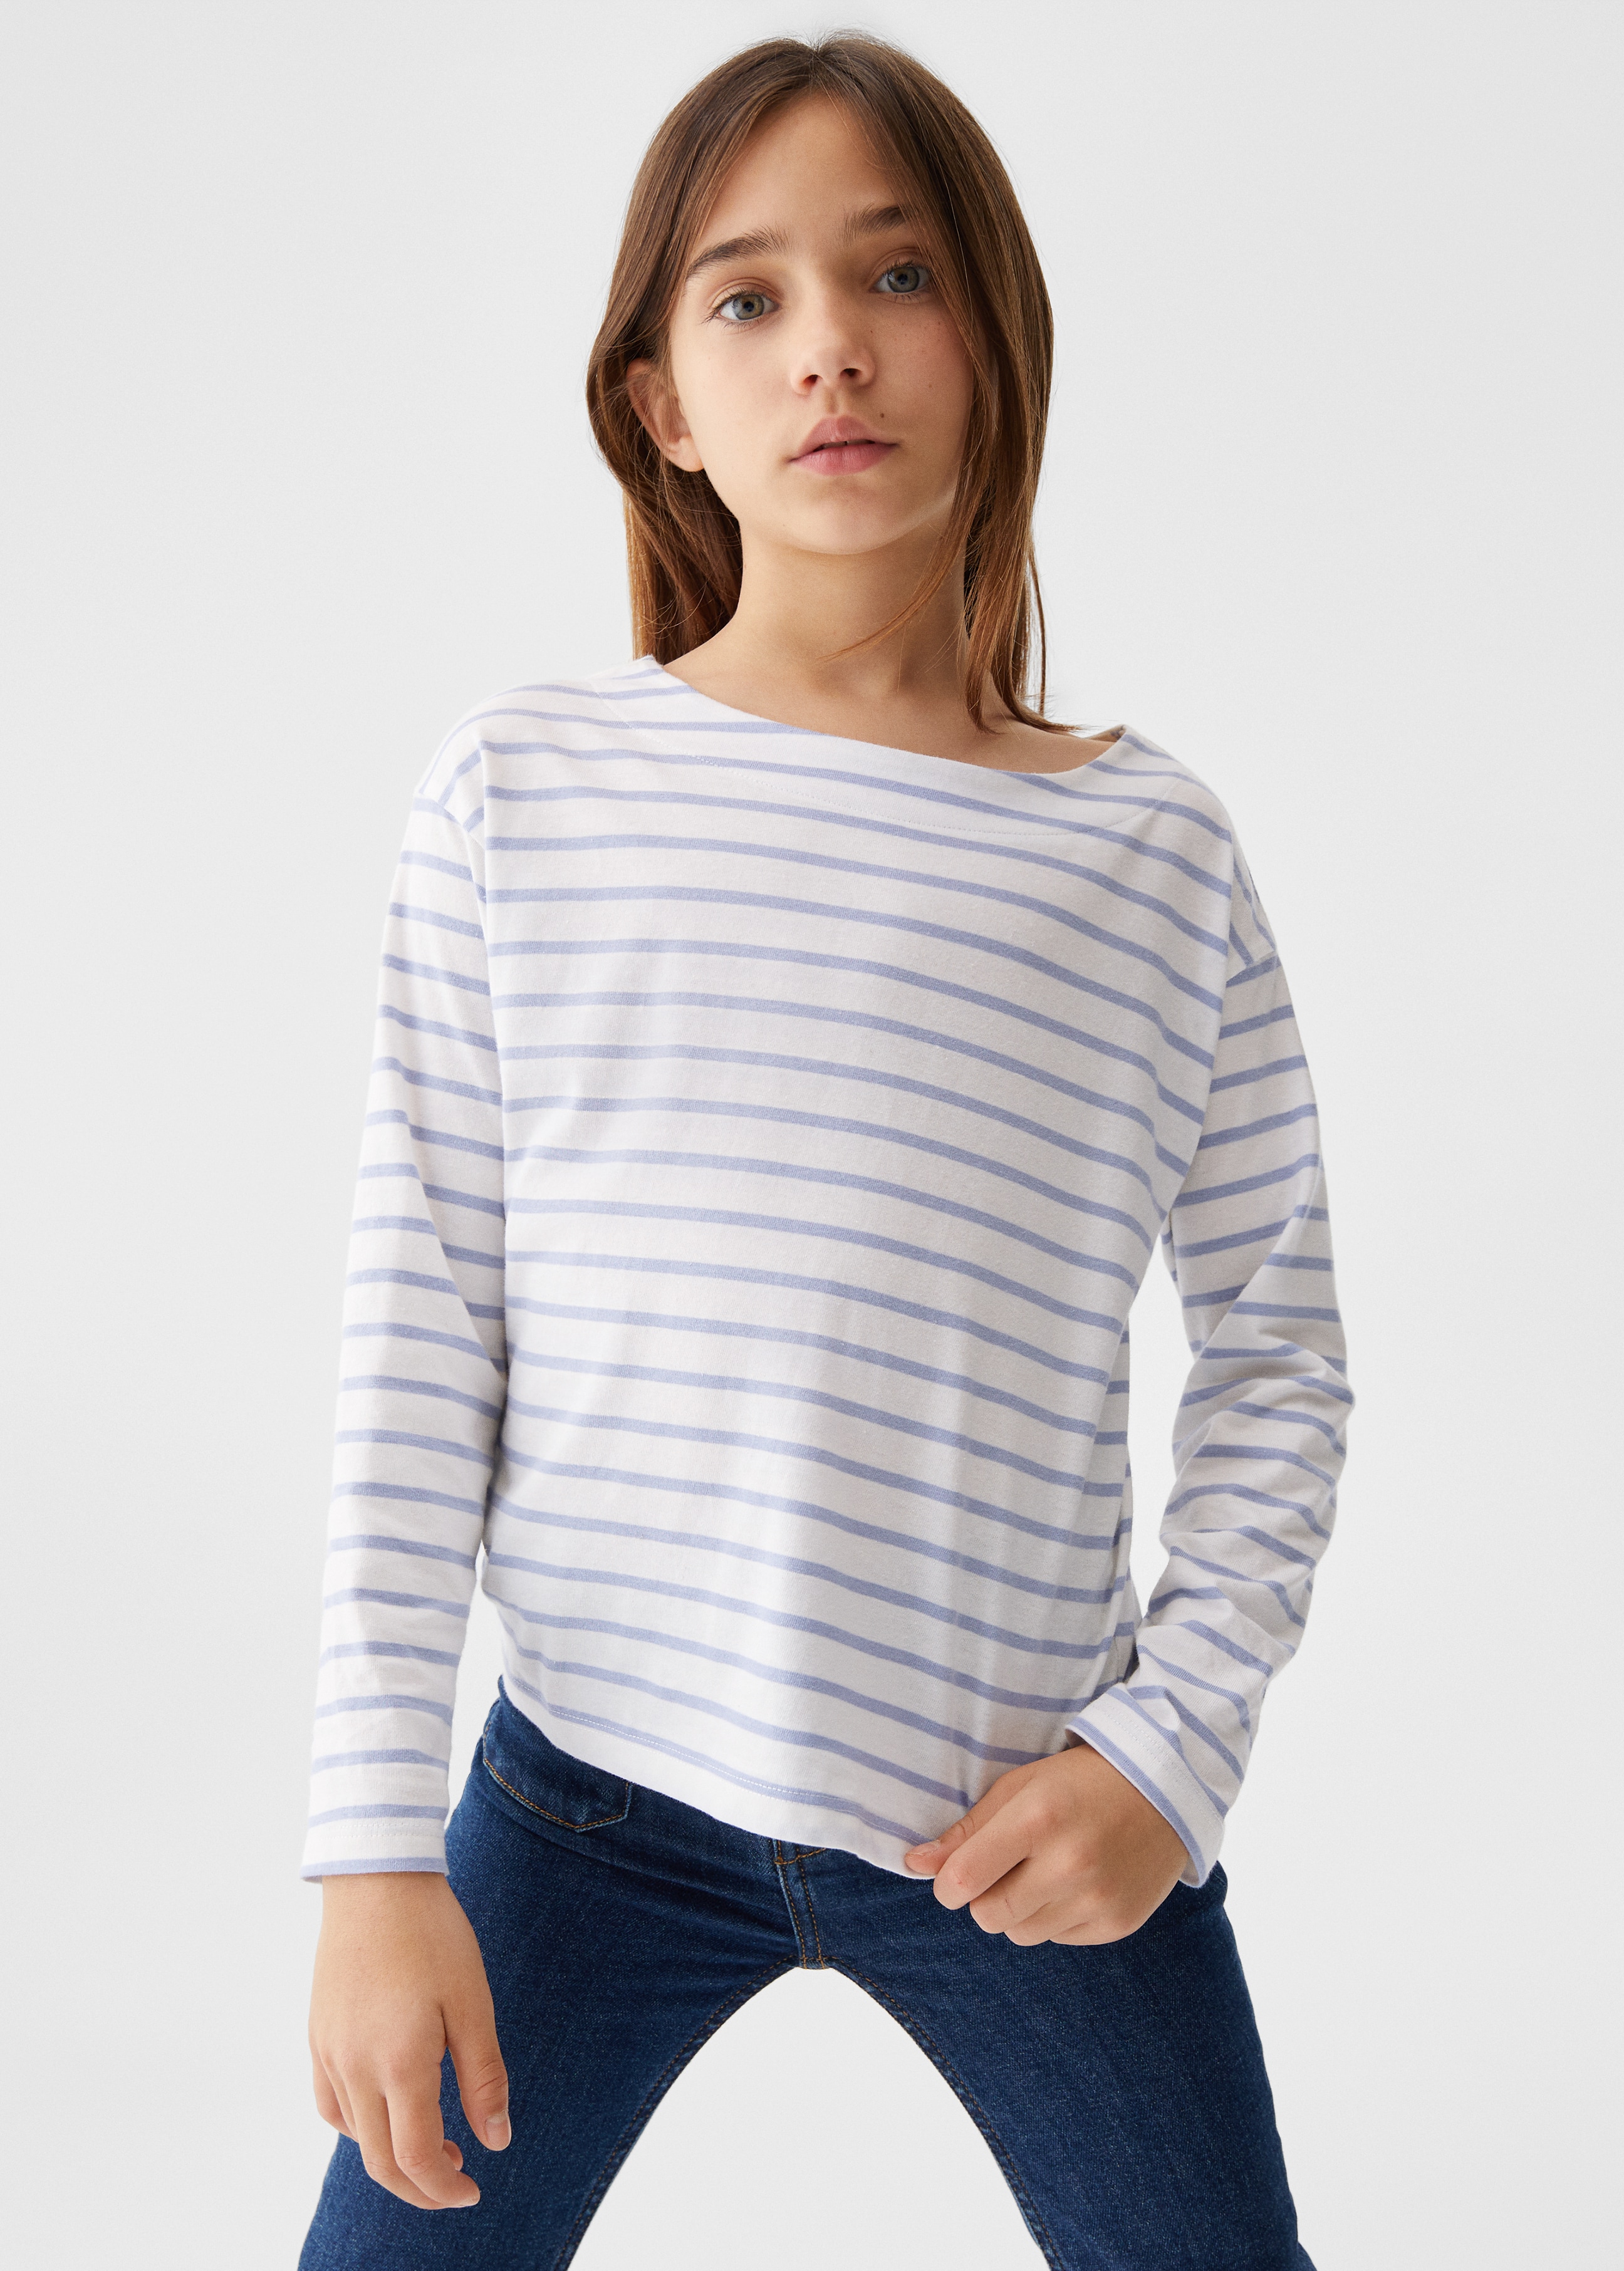 Striped long sleeves t-shirt - Medium plane